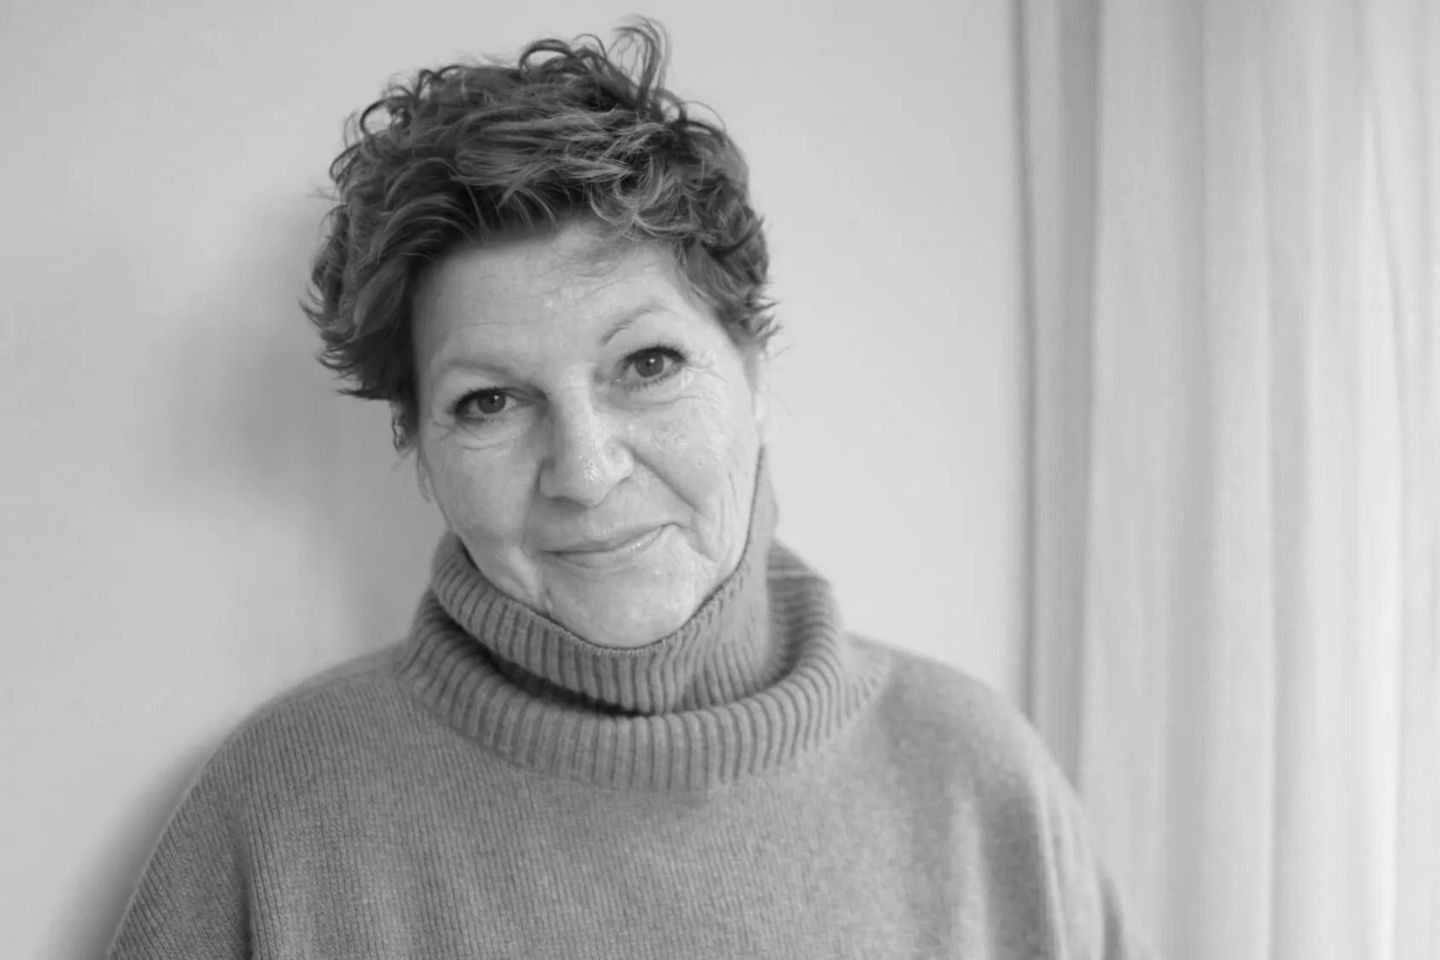 Castingdirektorin Simone Bär ist im Alter von 57 Jahren verstorben.